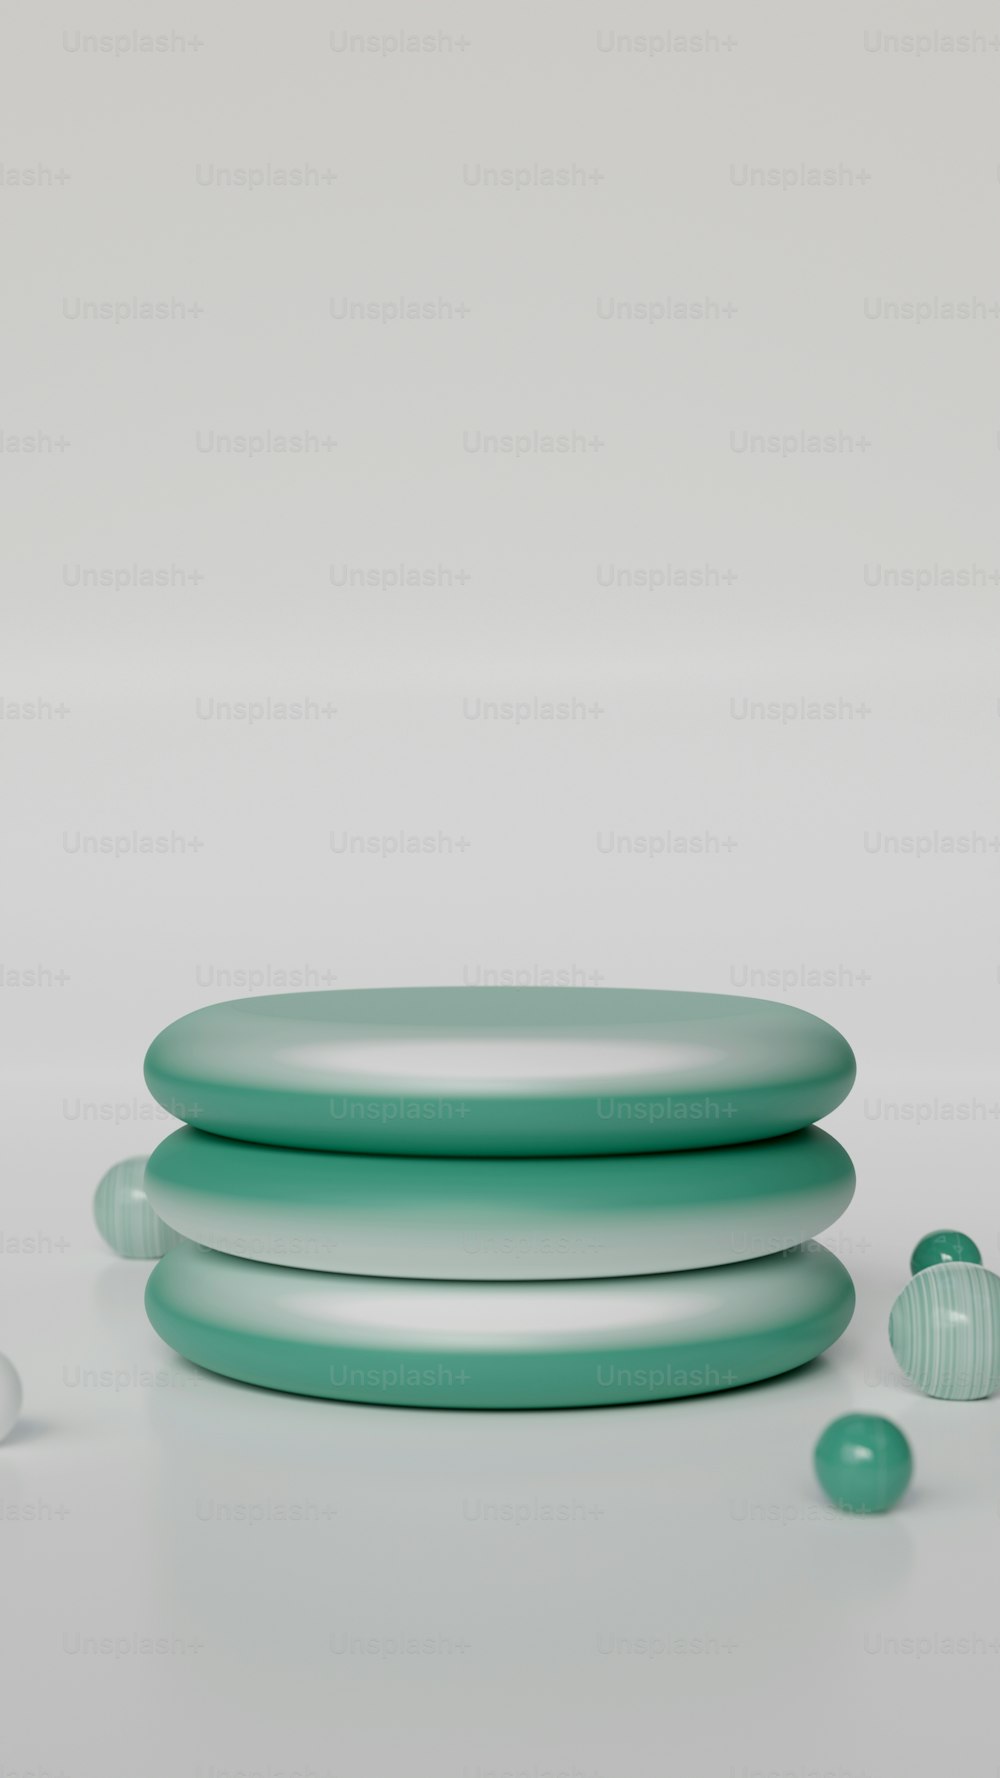 Una pila de frisbees verdes sentados uno encima del otro